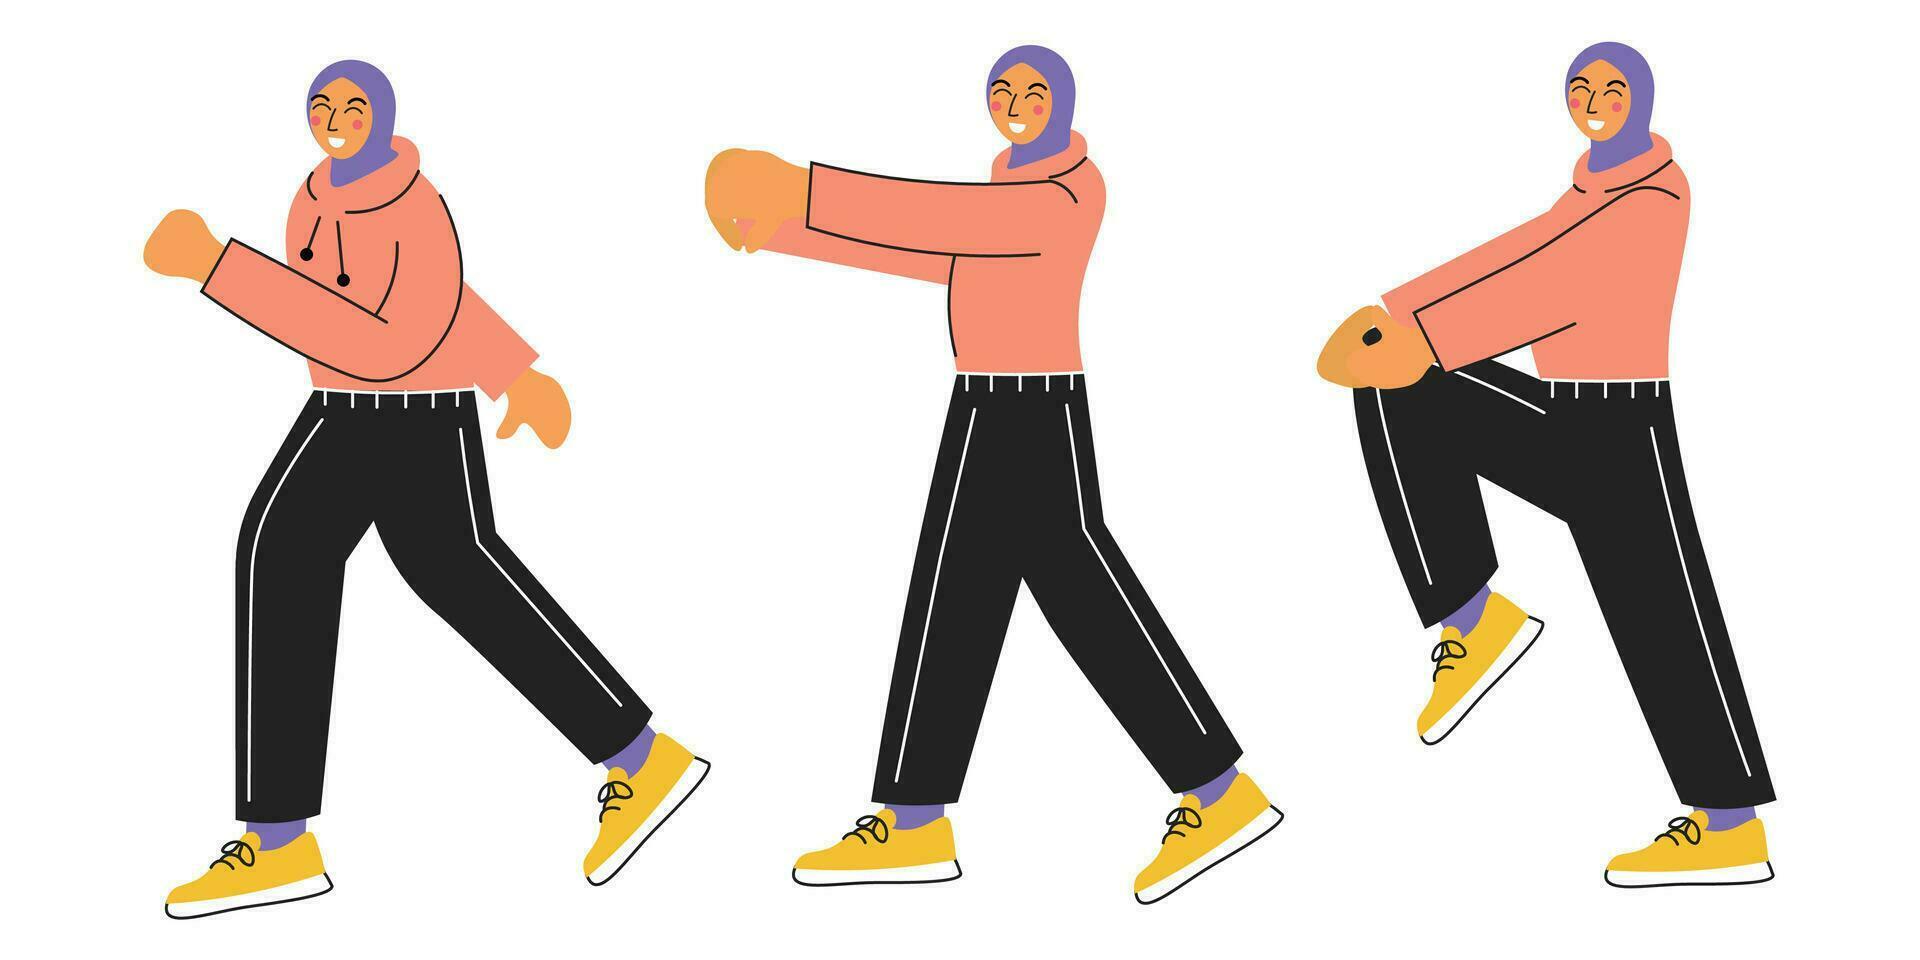 illustrationer av ung muslim kvinna do träna eller sport aktiviteter under iftar vektor